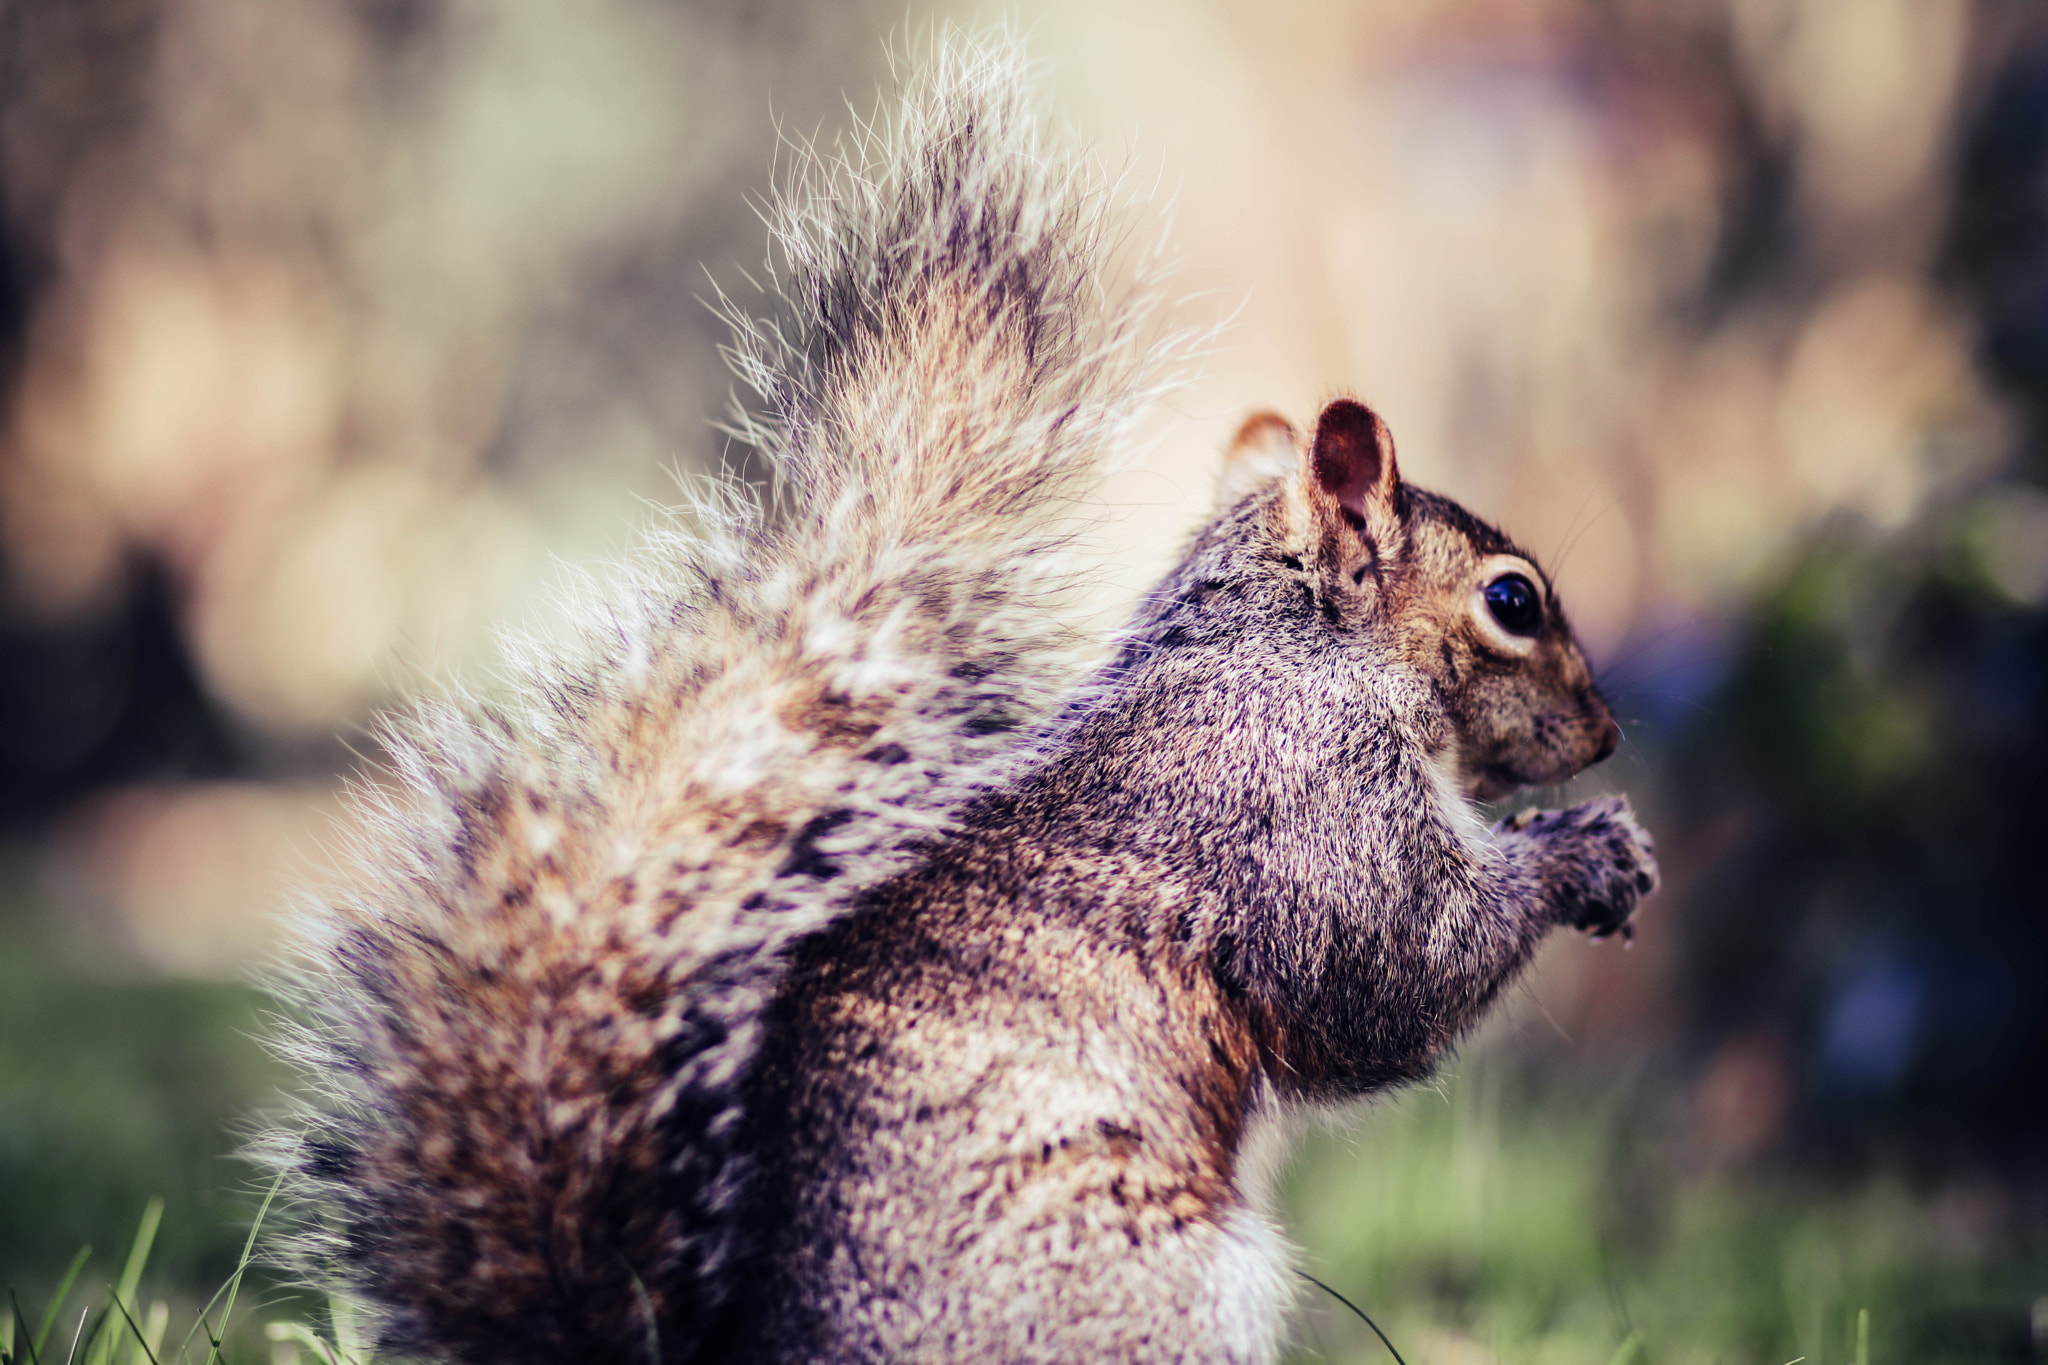 Canon EOS 80D sample photo. Squirrel photography